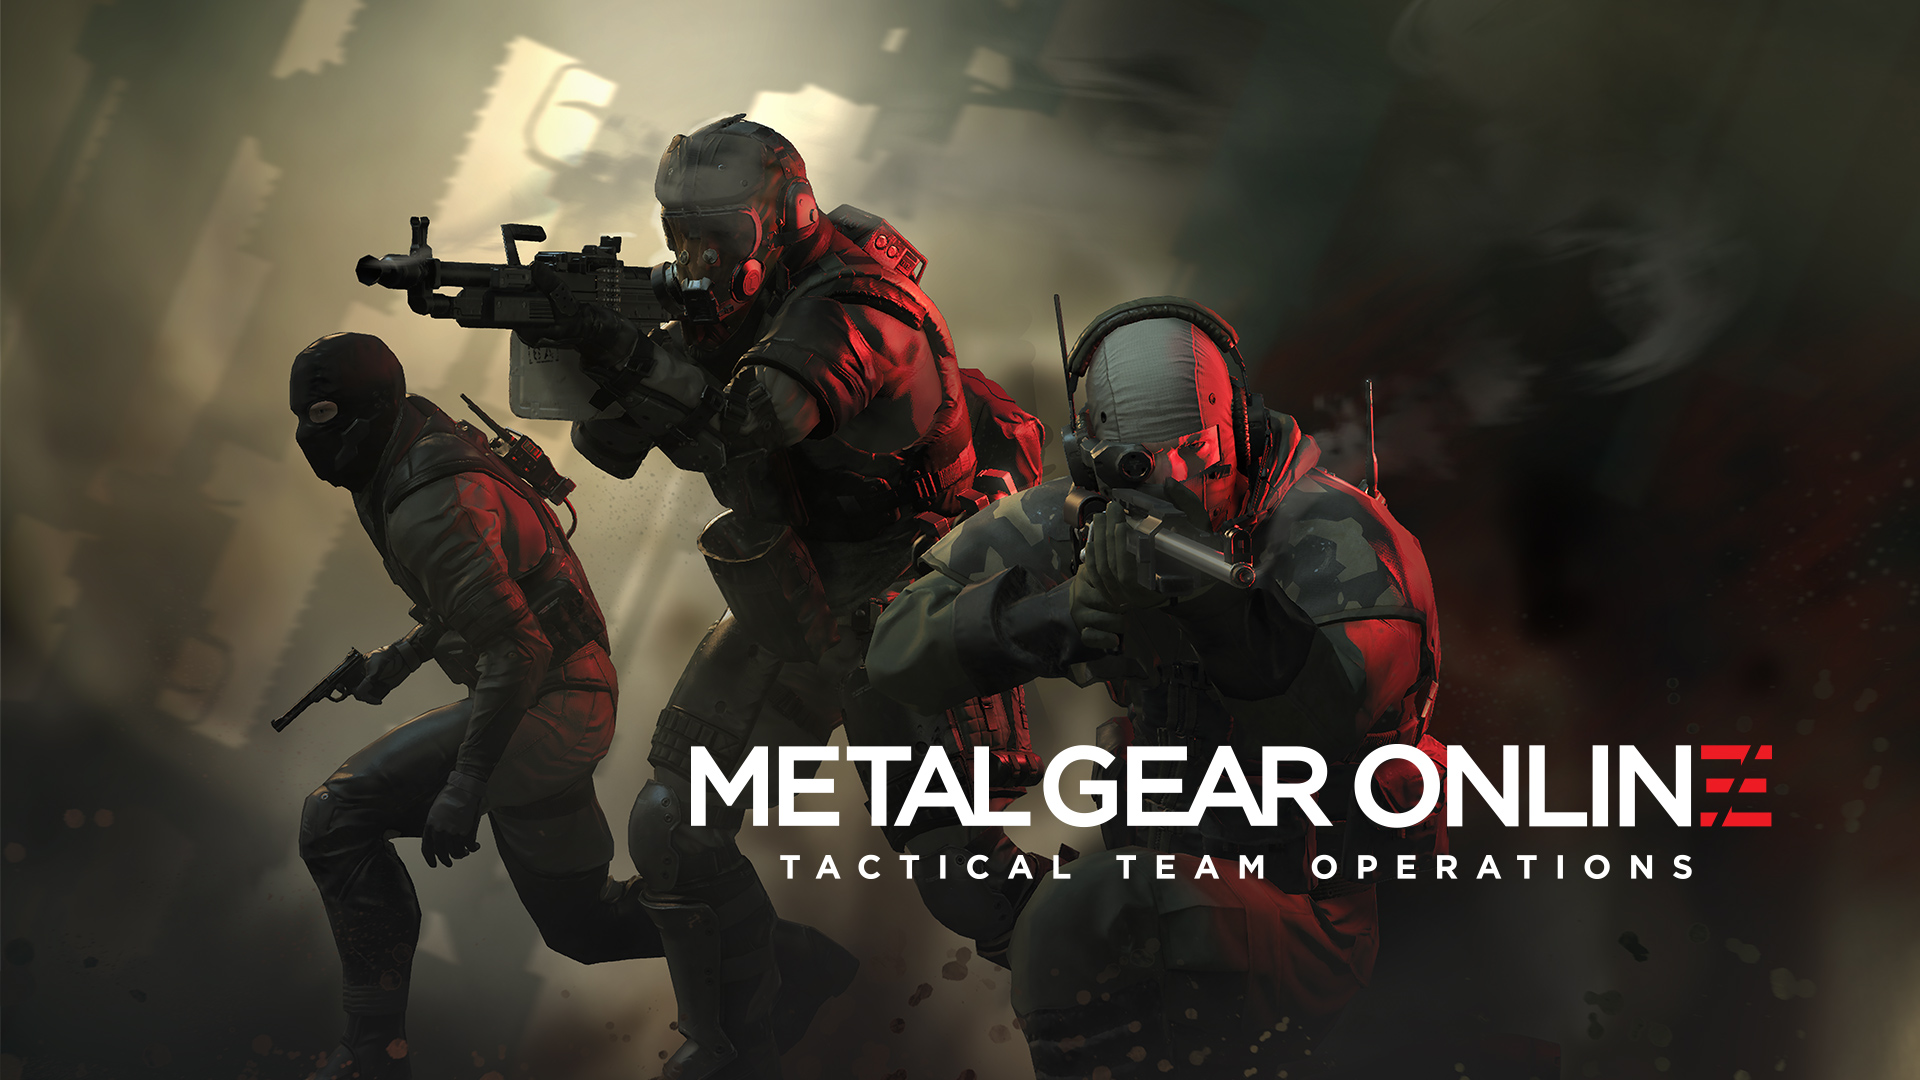 New Metal Gear Online Wallpaper And Screenshots Surface